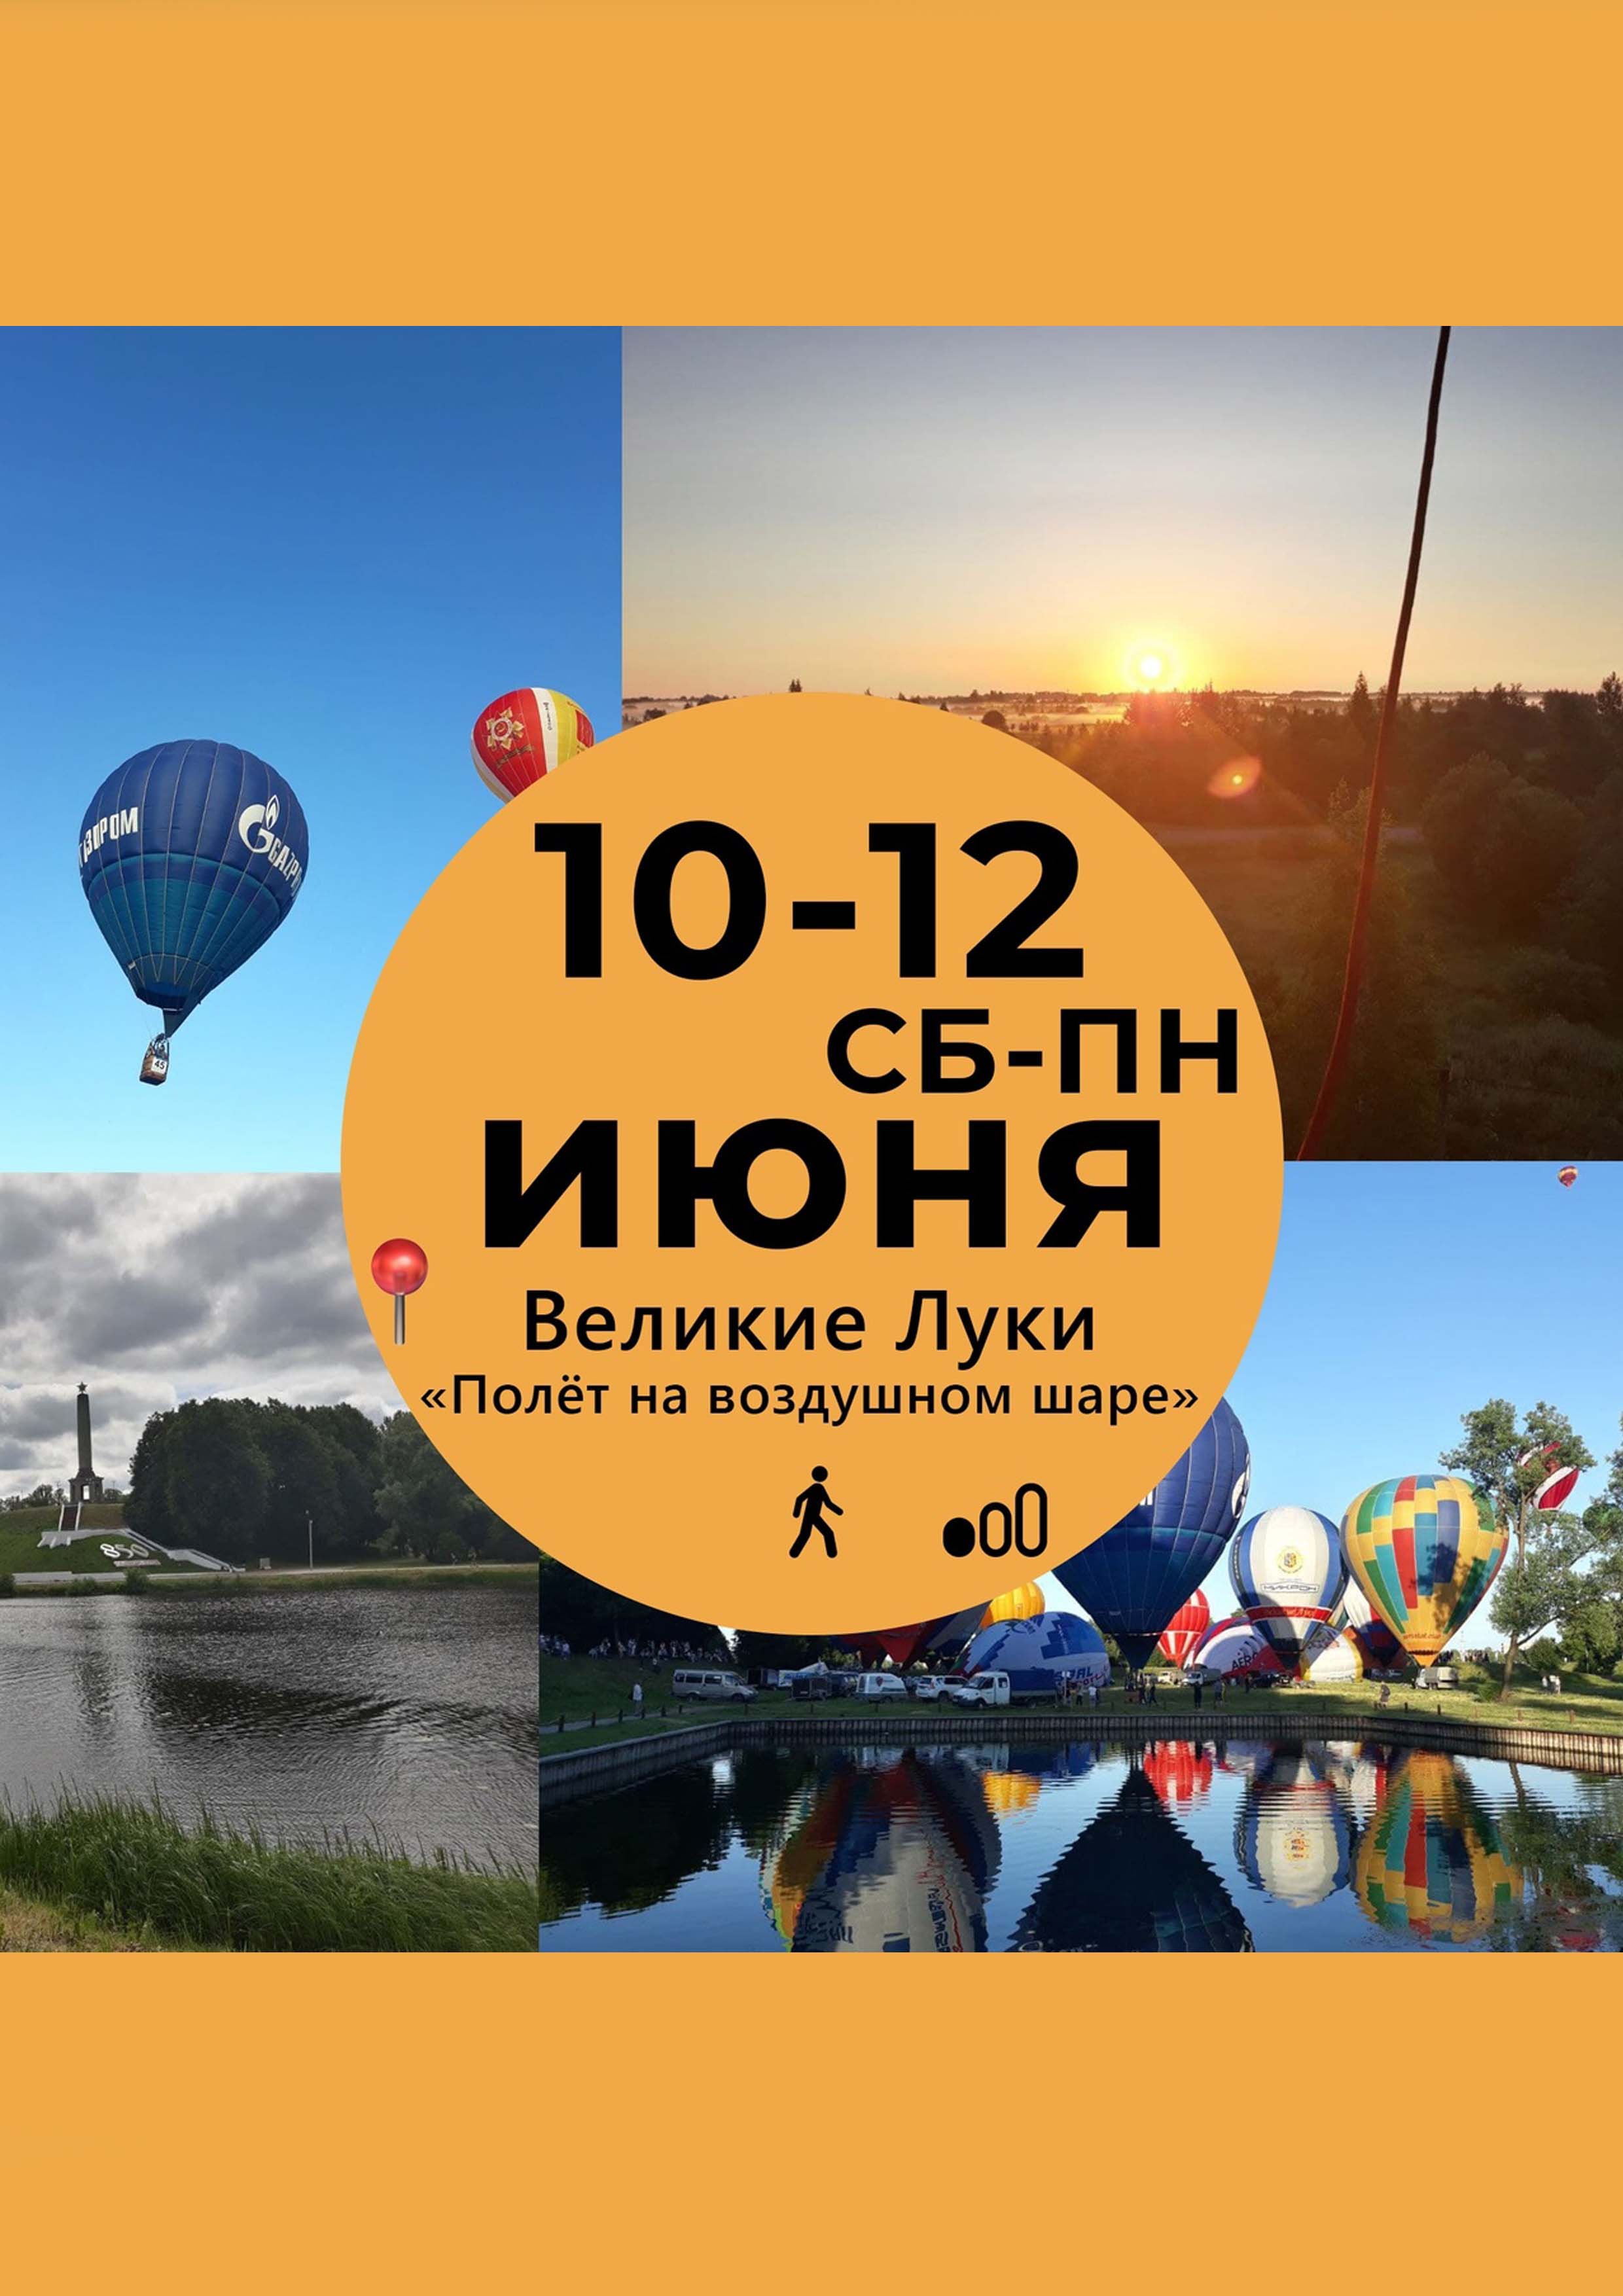 Летаем на воздушных шарах во время Чемпионата России по воздухоплаванию в городе Герое - Великих Луках!